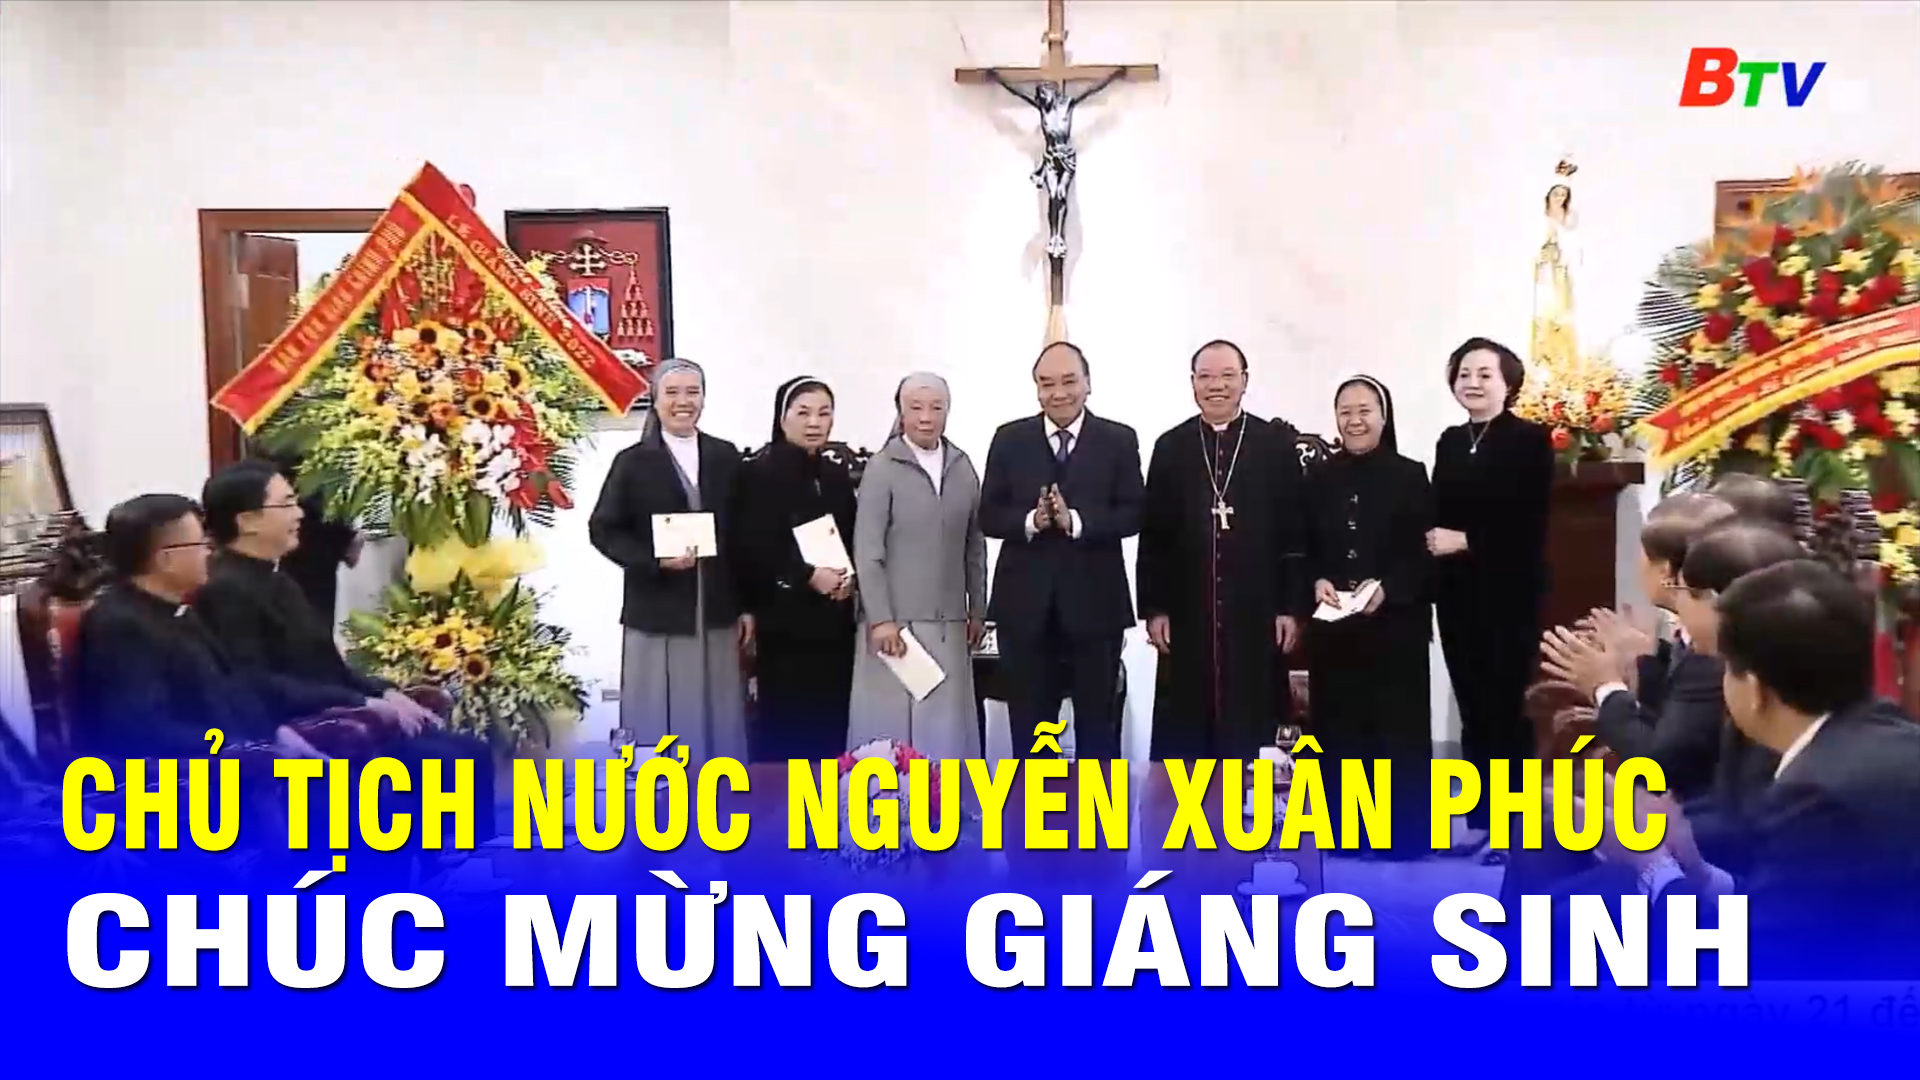 Chủ tịch nước Nguyễn Xuân Phúc chúc mừng Giáng sinh